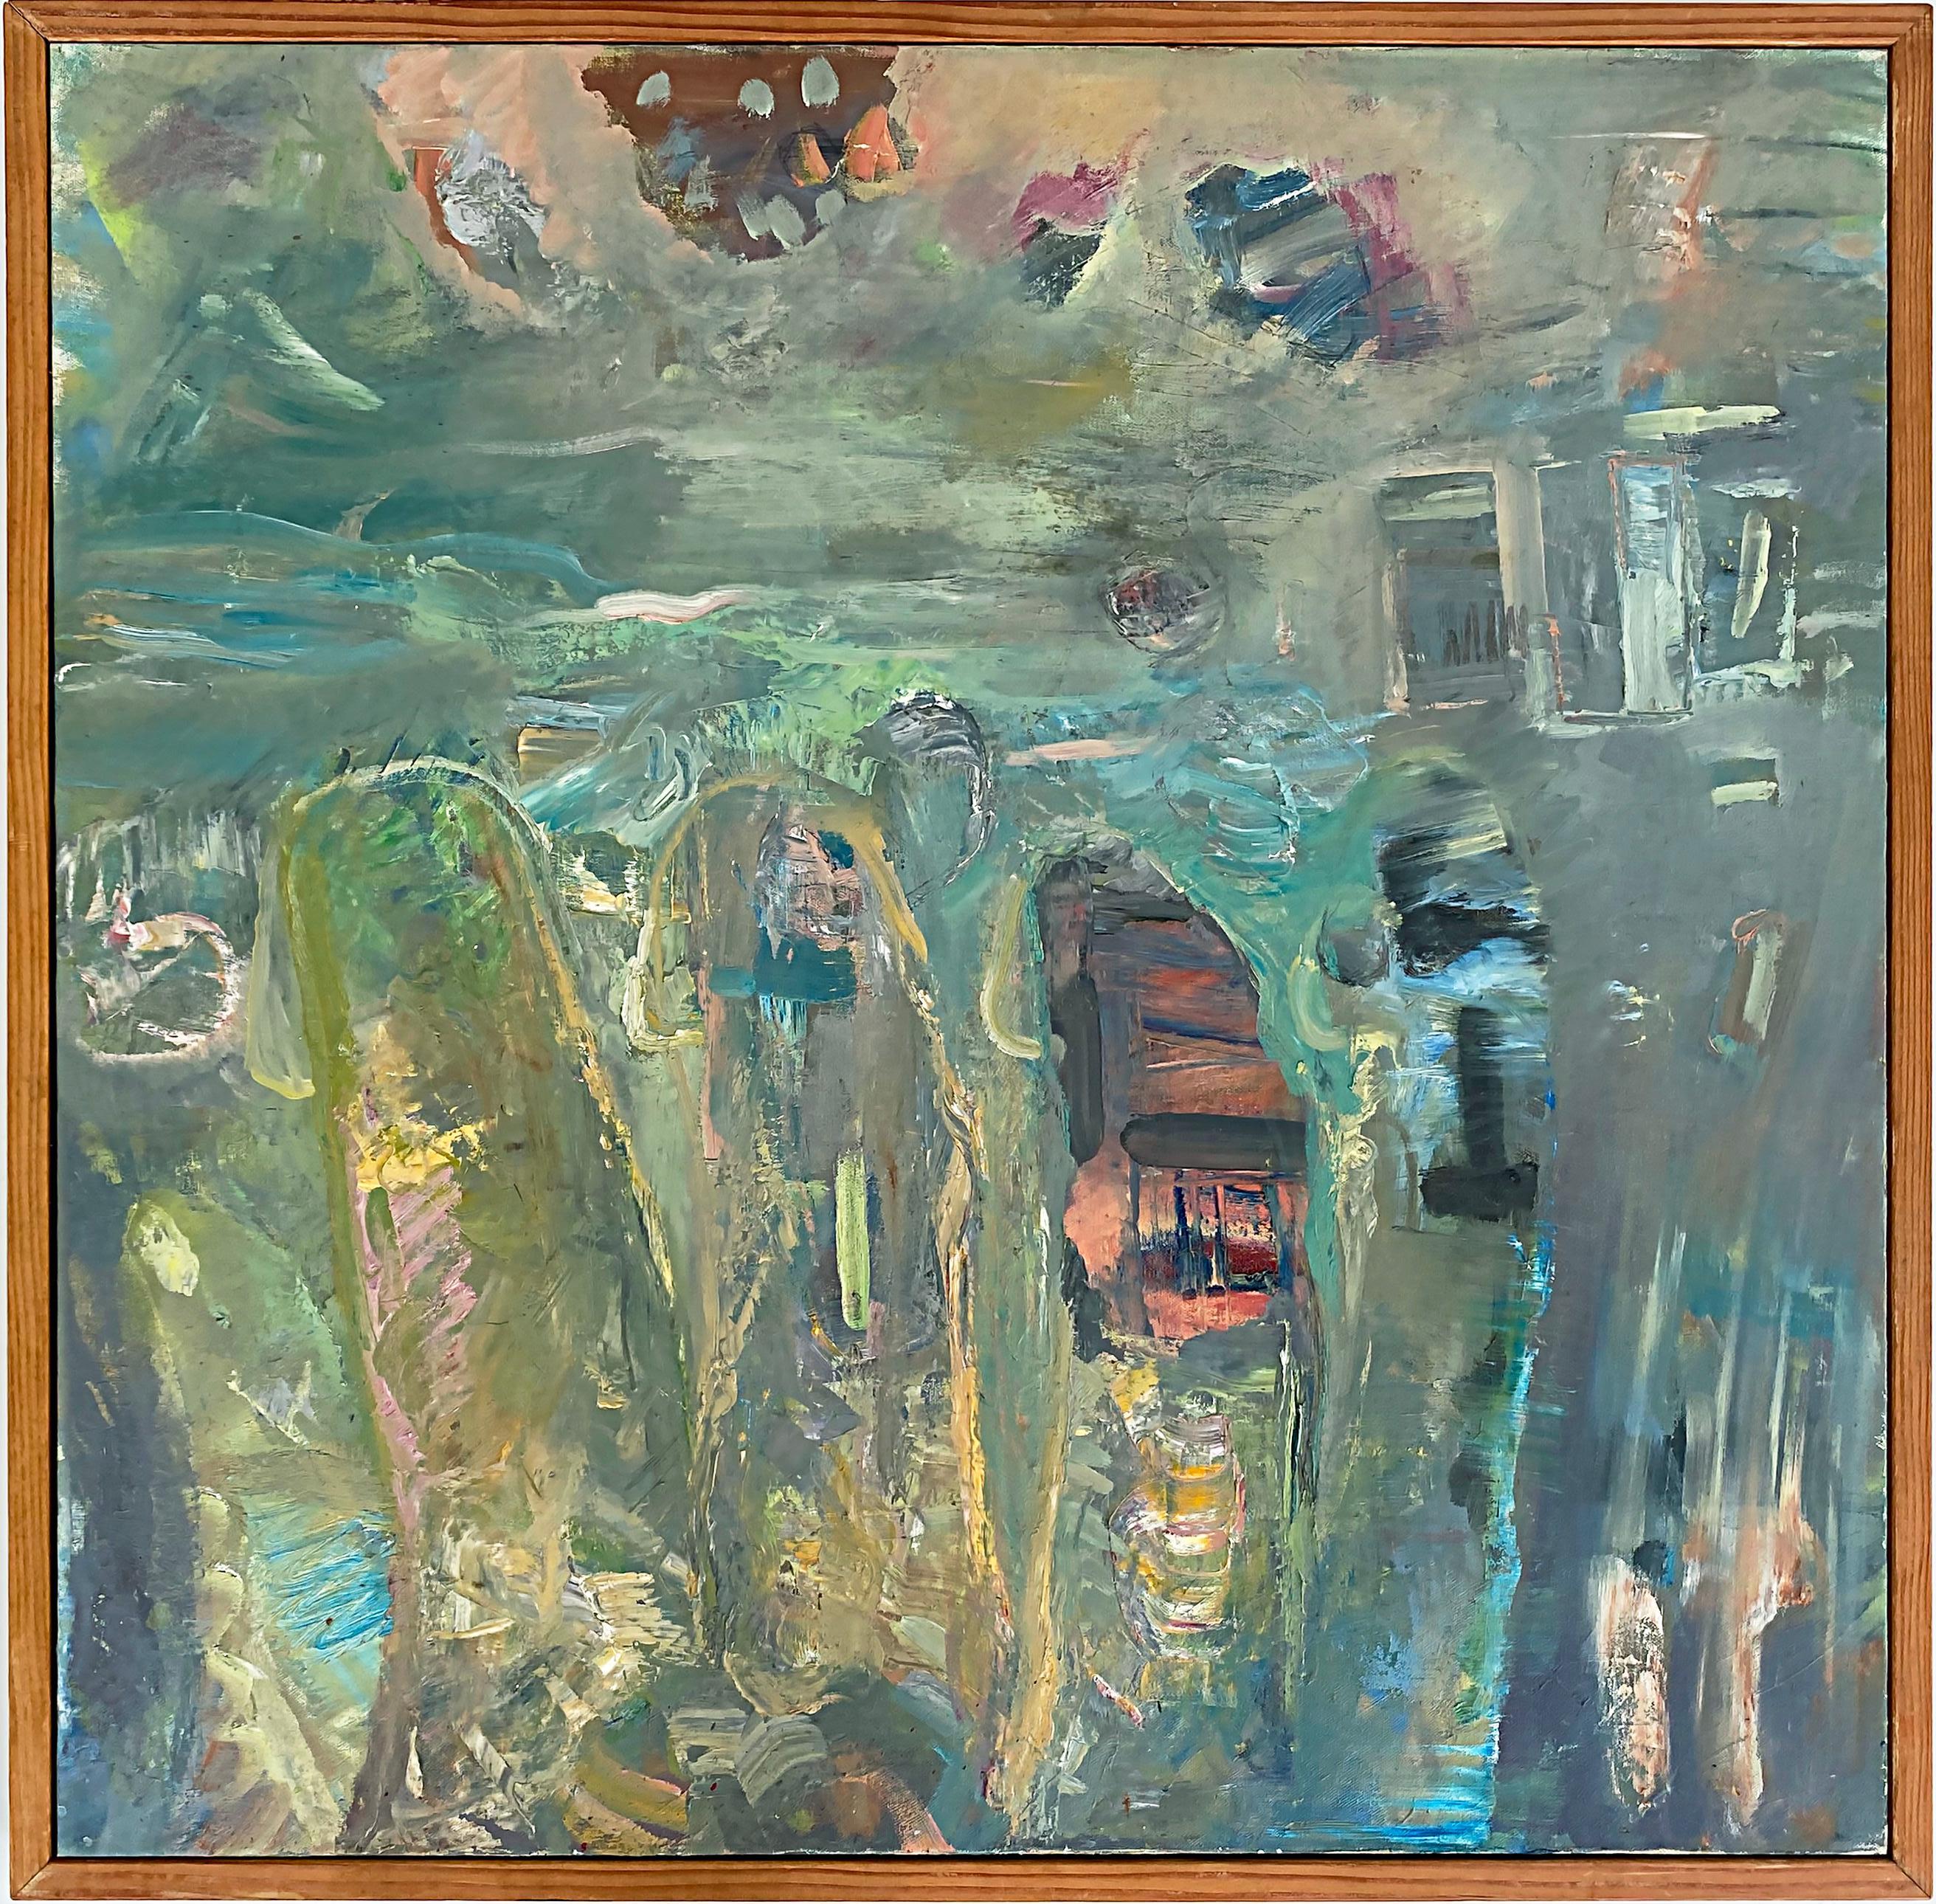 Peinture à l'huile abstraite vintage de Warren Fischer.

Est proposée à la vente une peinture à l'huile abstraite sur toile de l'artiste américain Warren Fischer (1943-2001). Le tableau fait partie de la succession de l'artiste. Fischer a utilisé